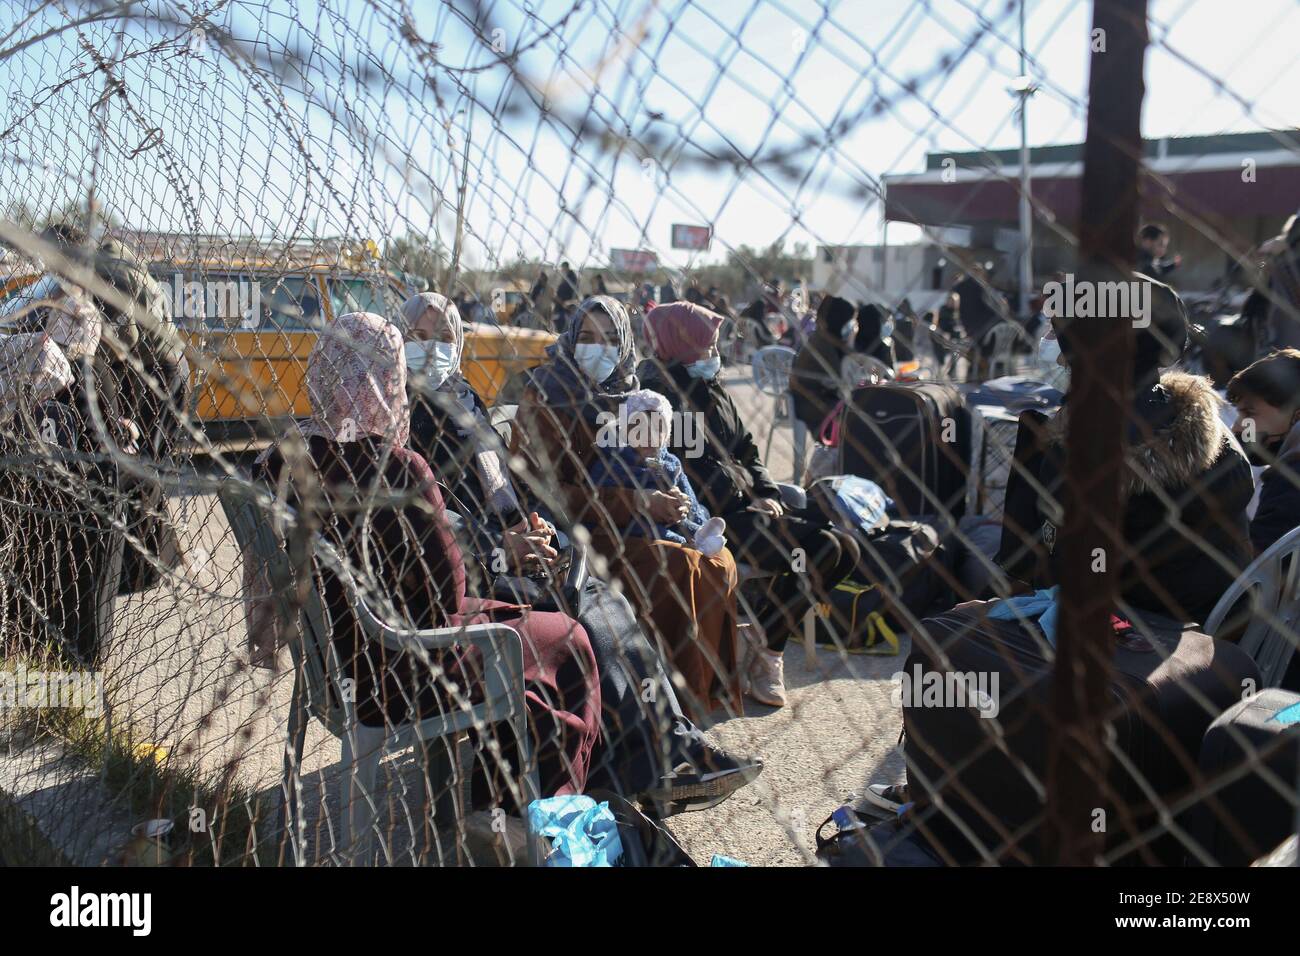 Egypt, GAZA. 1st Feb, 2021. Gaza (PALESTINA), 01/02/2021 - ABERTURA/FRONTEIRA DA RAFAH /PALESTINA- Palestinos usam mascaras protetoras em meio a disseminacao do Coronavirus (Covid 19), esperando ao lado de suas bagagens para obter autorizacoes de viagem para cruzar a fronteira de Rafah no sul da Faixa de Gaza, apos anunciar que O Egito vai reabri-lo de 1 a 4 de fevereiro. Credit: Yousef Masoud/TheNEWS2/ZUMA Wire/Alamy Live News Stock Photo